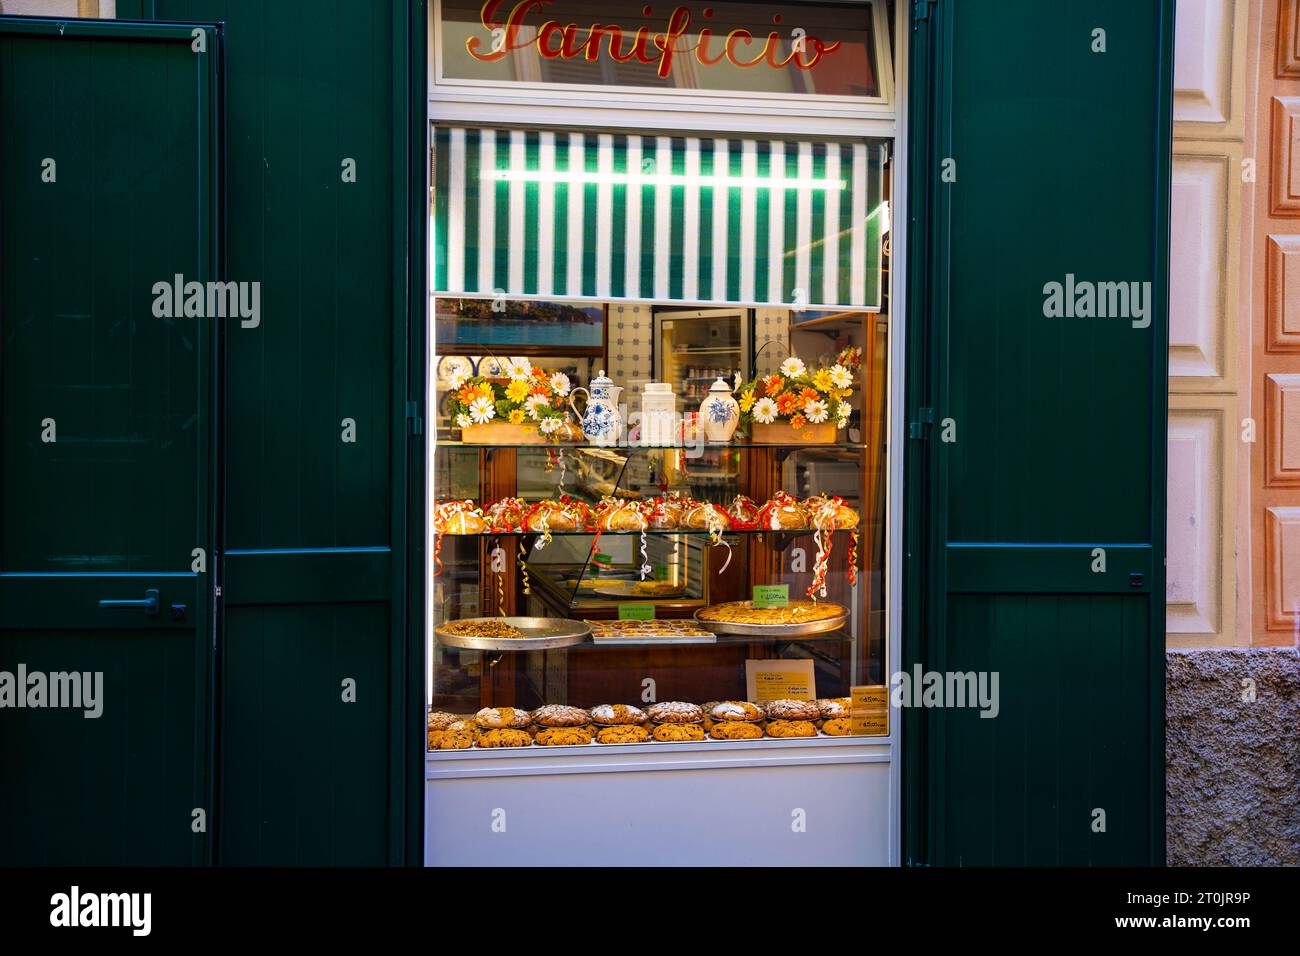 Ein einladendes warmes Fenster einer italienischen Bäckerei gefüllt mit frischem Brot, Gebäck und köstlichen Leckereien, die Sie riechen und schmecken können, wenn Sie sie nur betrachten Stockfoto